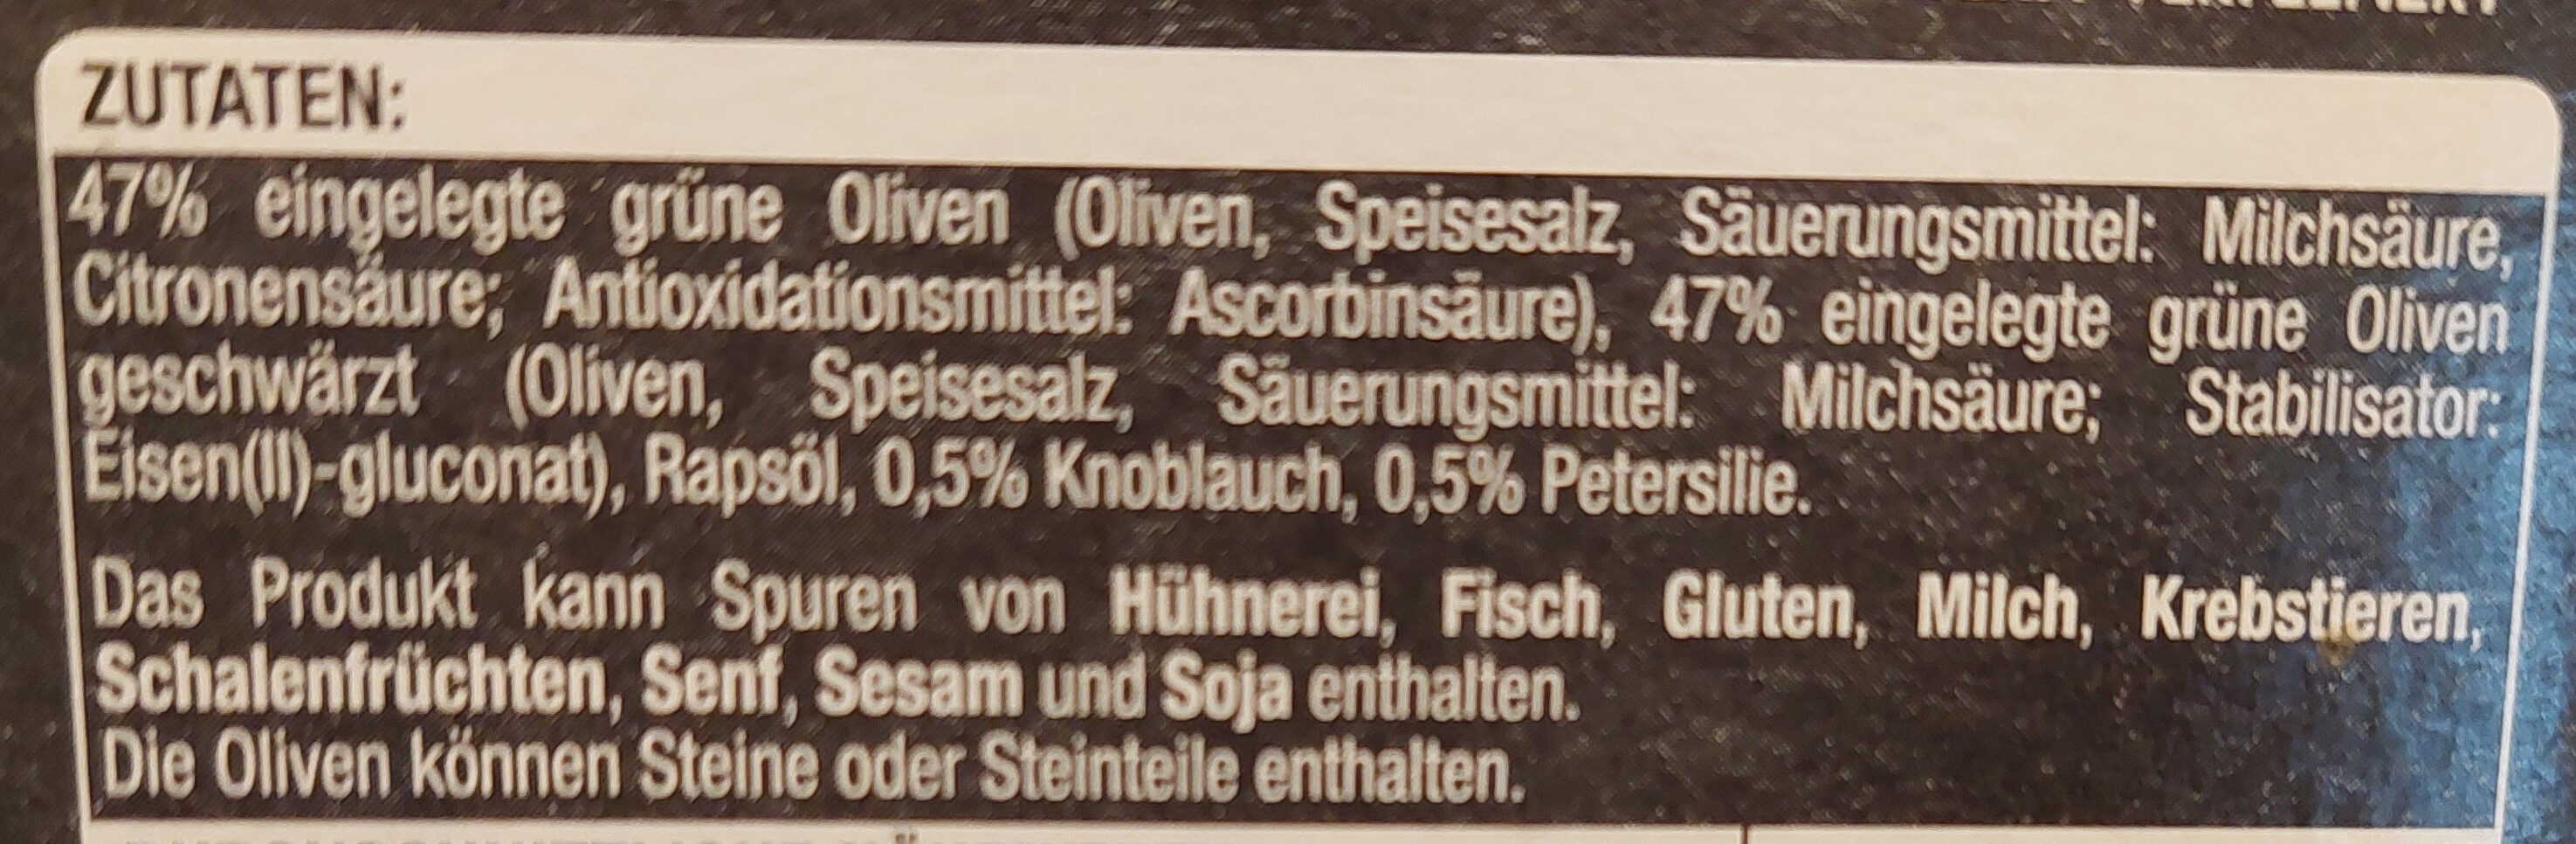 Olivenmix - Zutaten